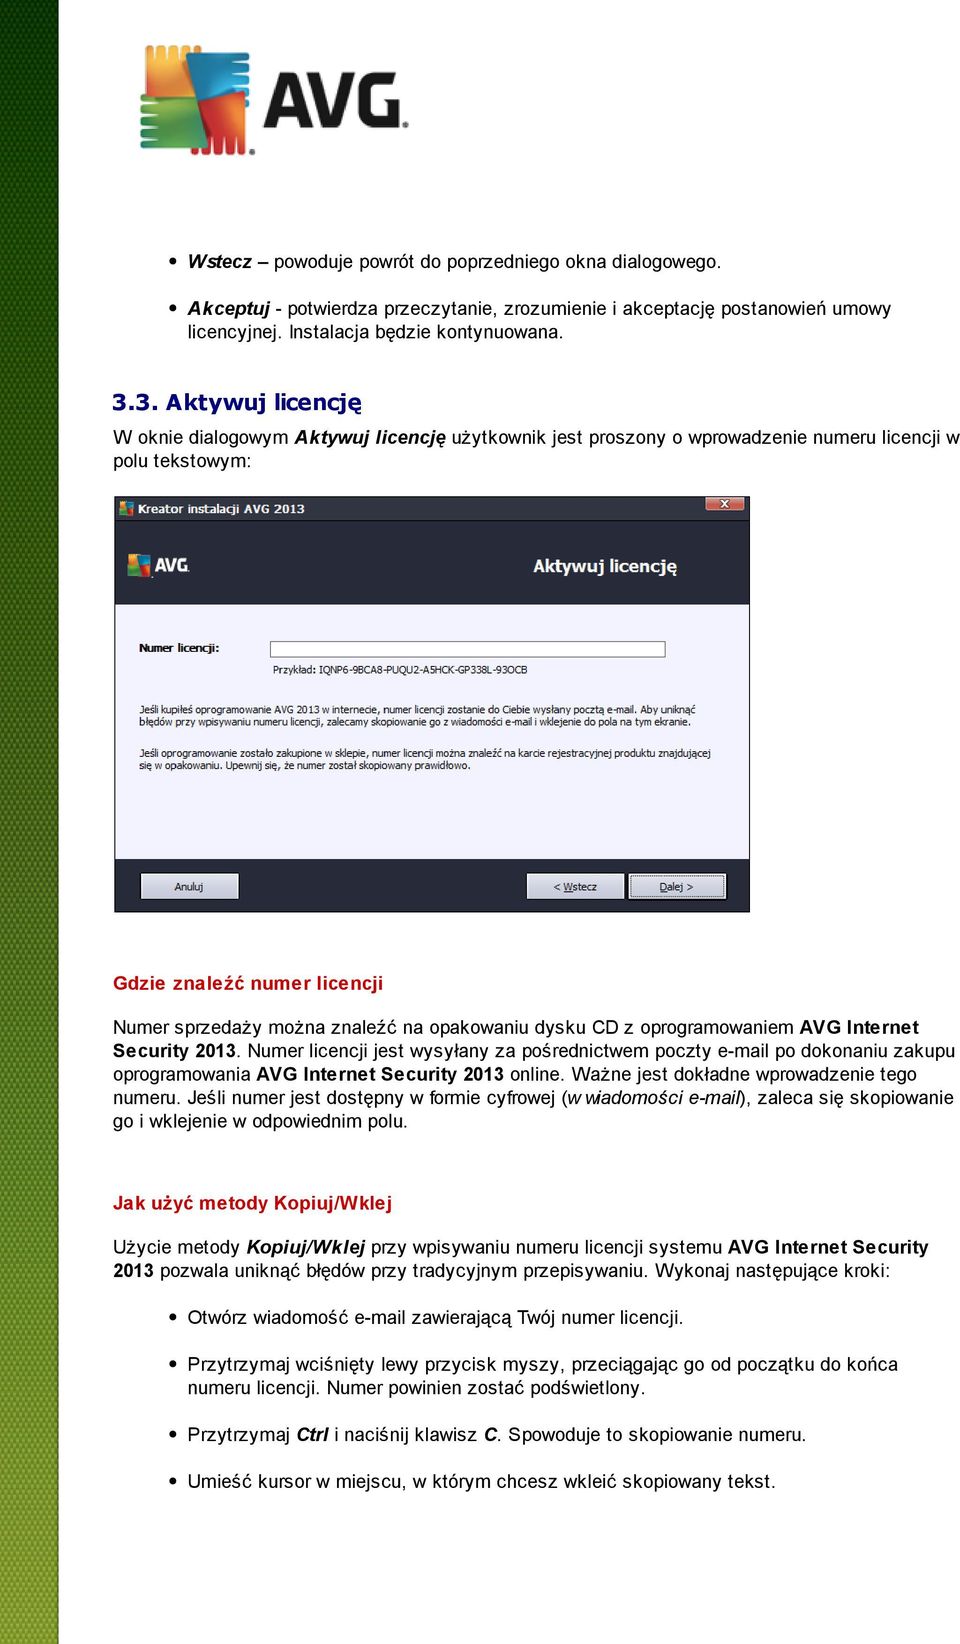 opakowaniu dysku CD z oprogramowaniem AVG Internet Security 2013. Numer licencji jest wysyłany za pośrednictwem poczty e-mail po dokonaniu zakupu oprogramowania AVG Internet Security 2013 online.